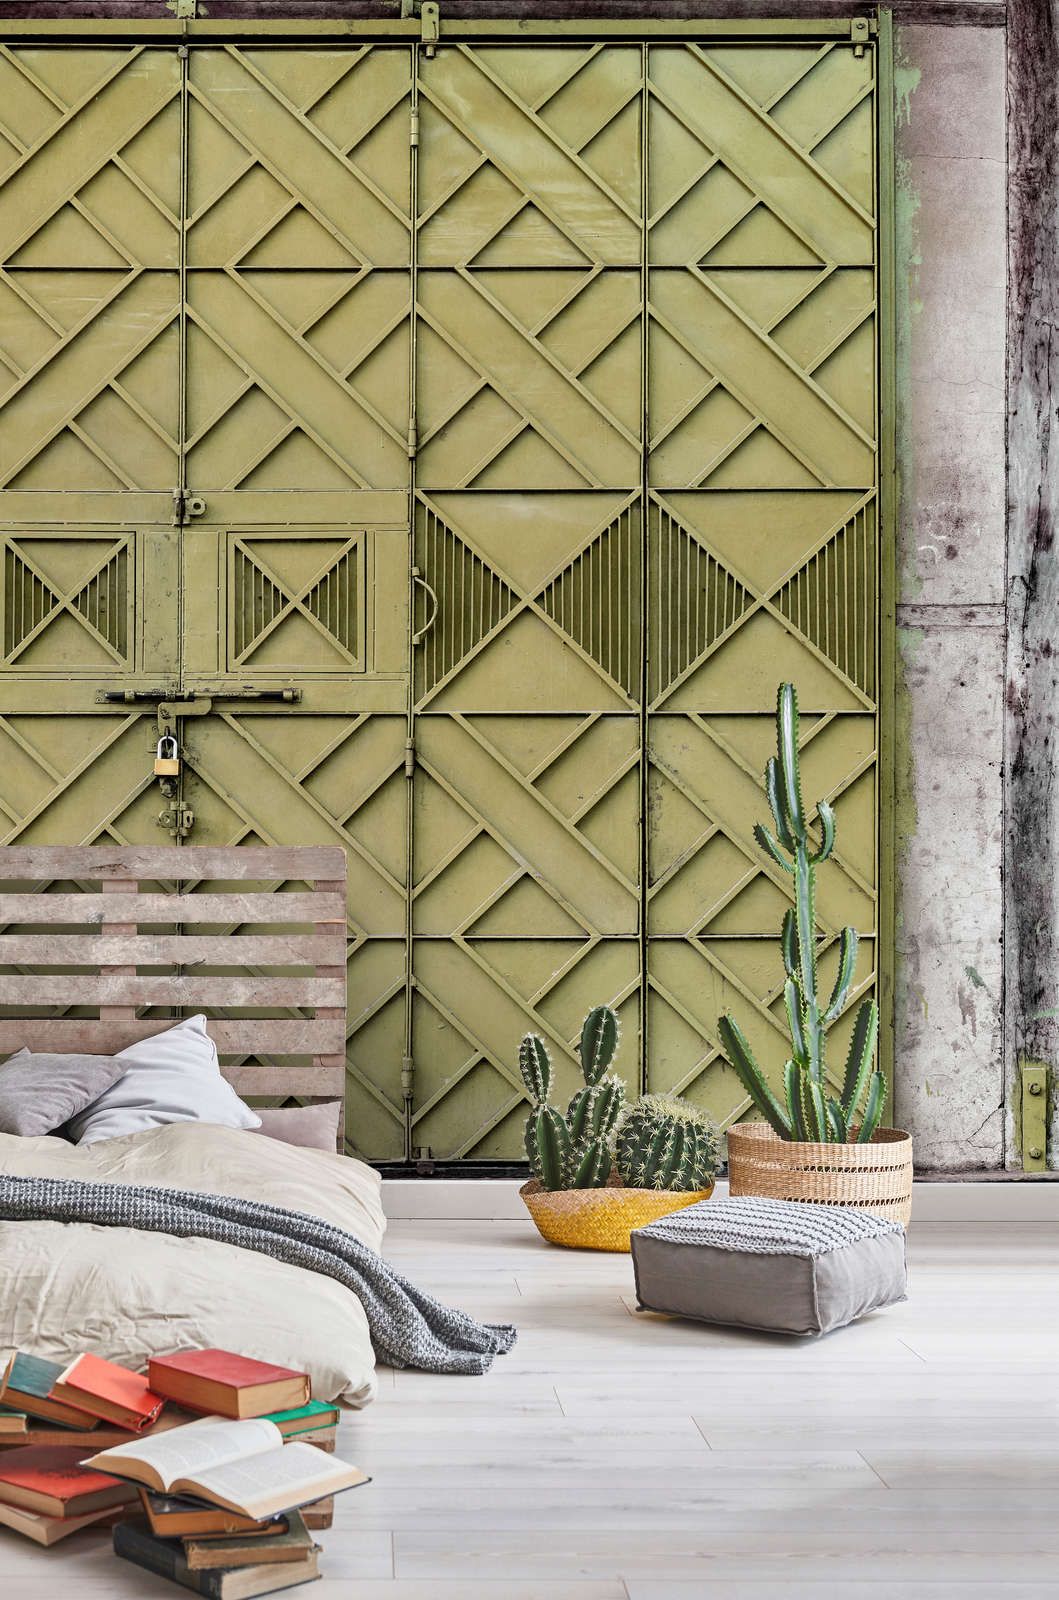             Digital behang »agra« - Close-up van een groen metalen hek met ruitvormige decoraties - Gladde, licht parelmoerachtige vliesstof
        